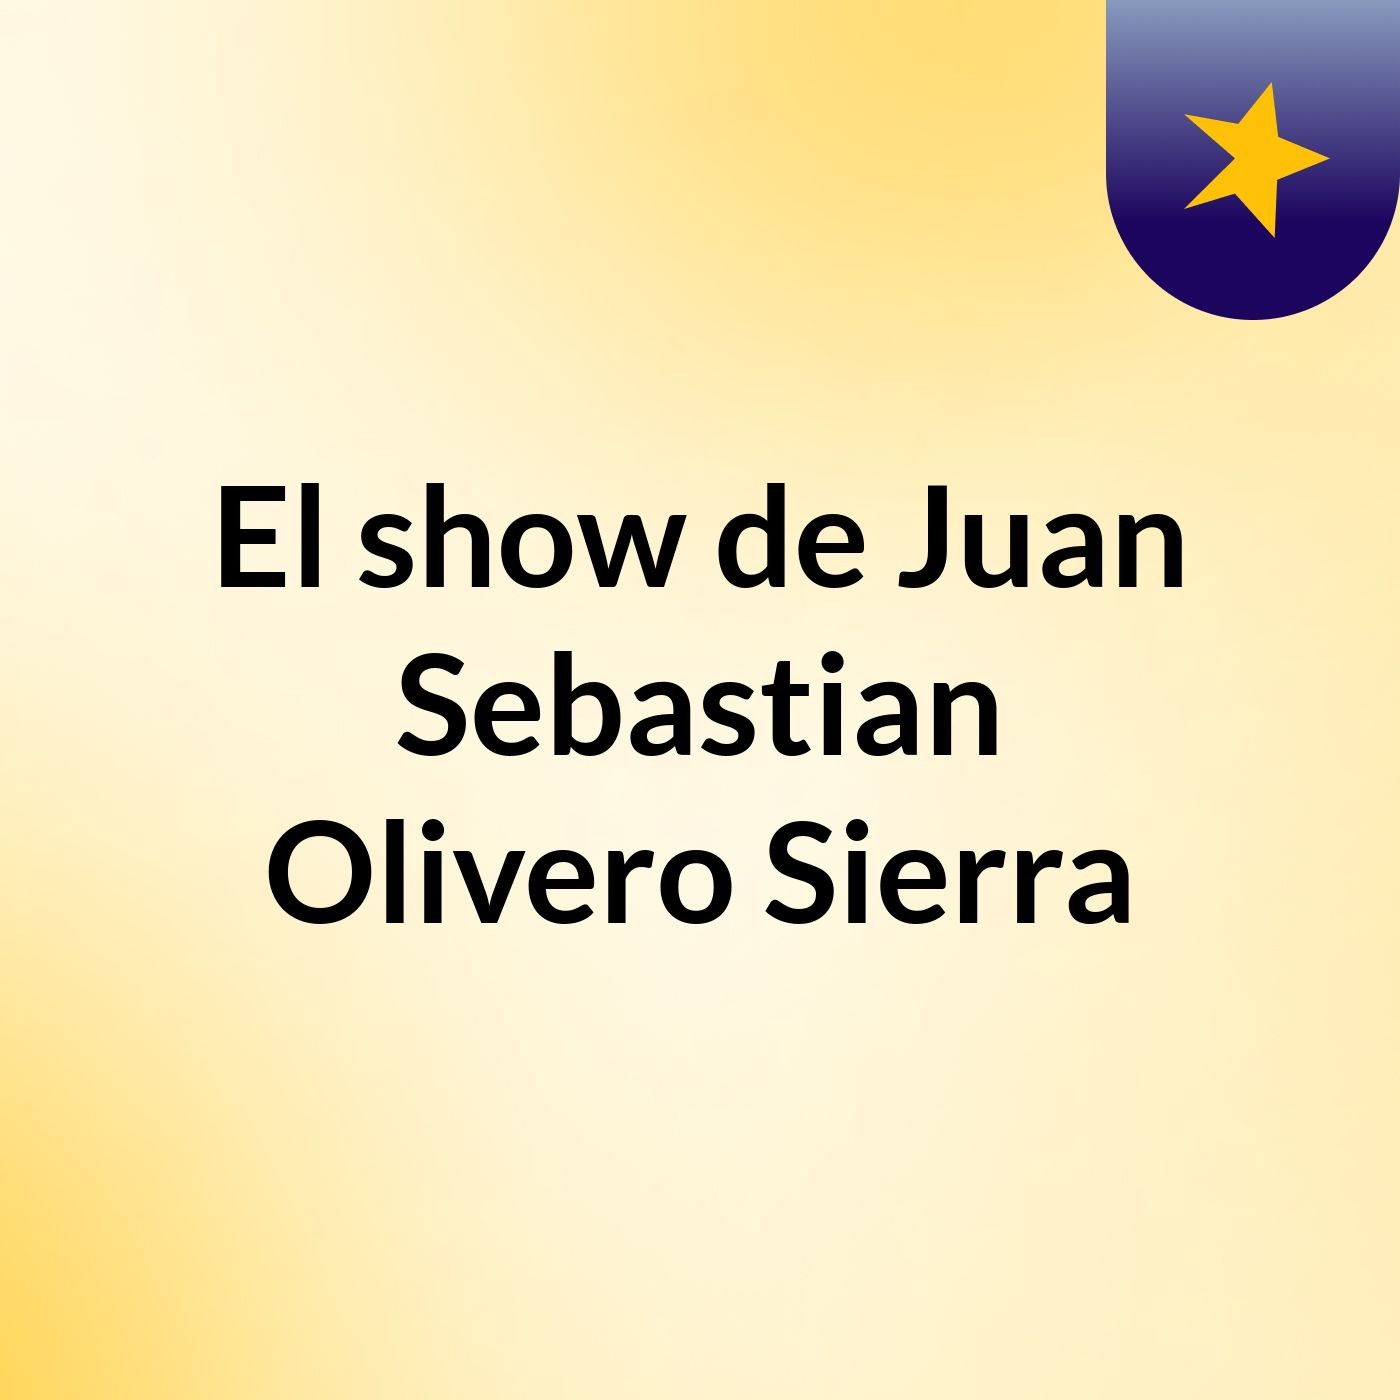 Gran Campaña Edición Informativa Noti CristianosEpisodio 8 - El show de Juan Sebastian Olivero Sierra